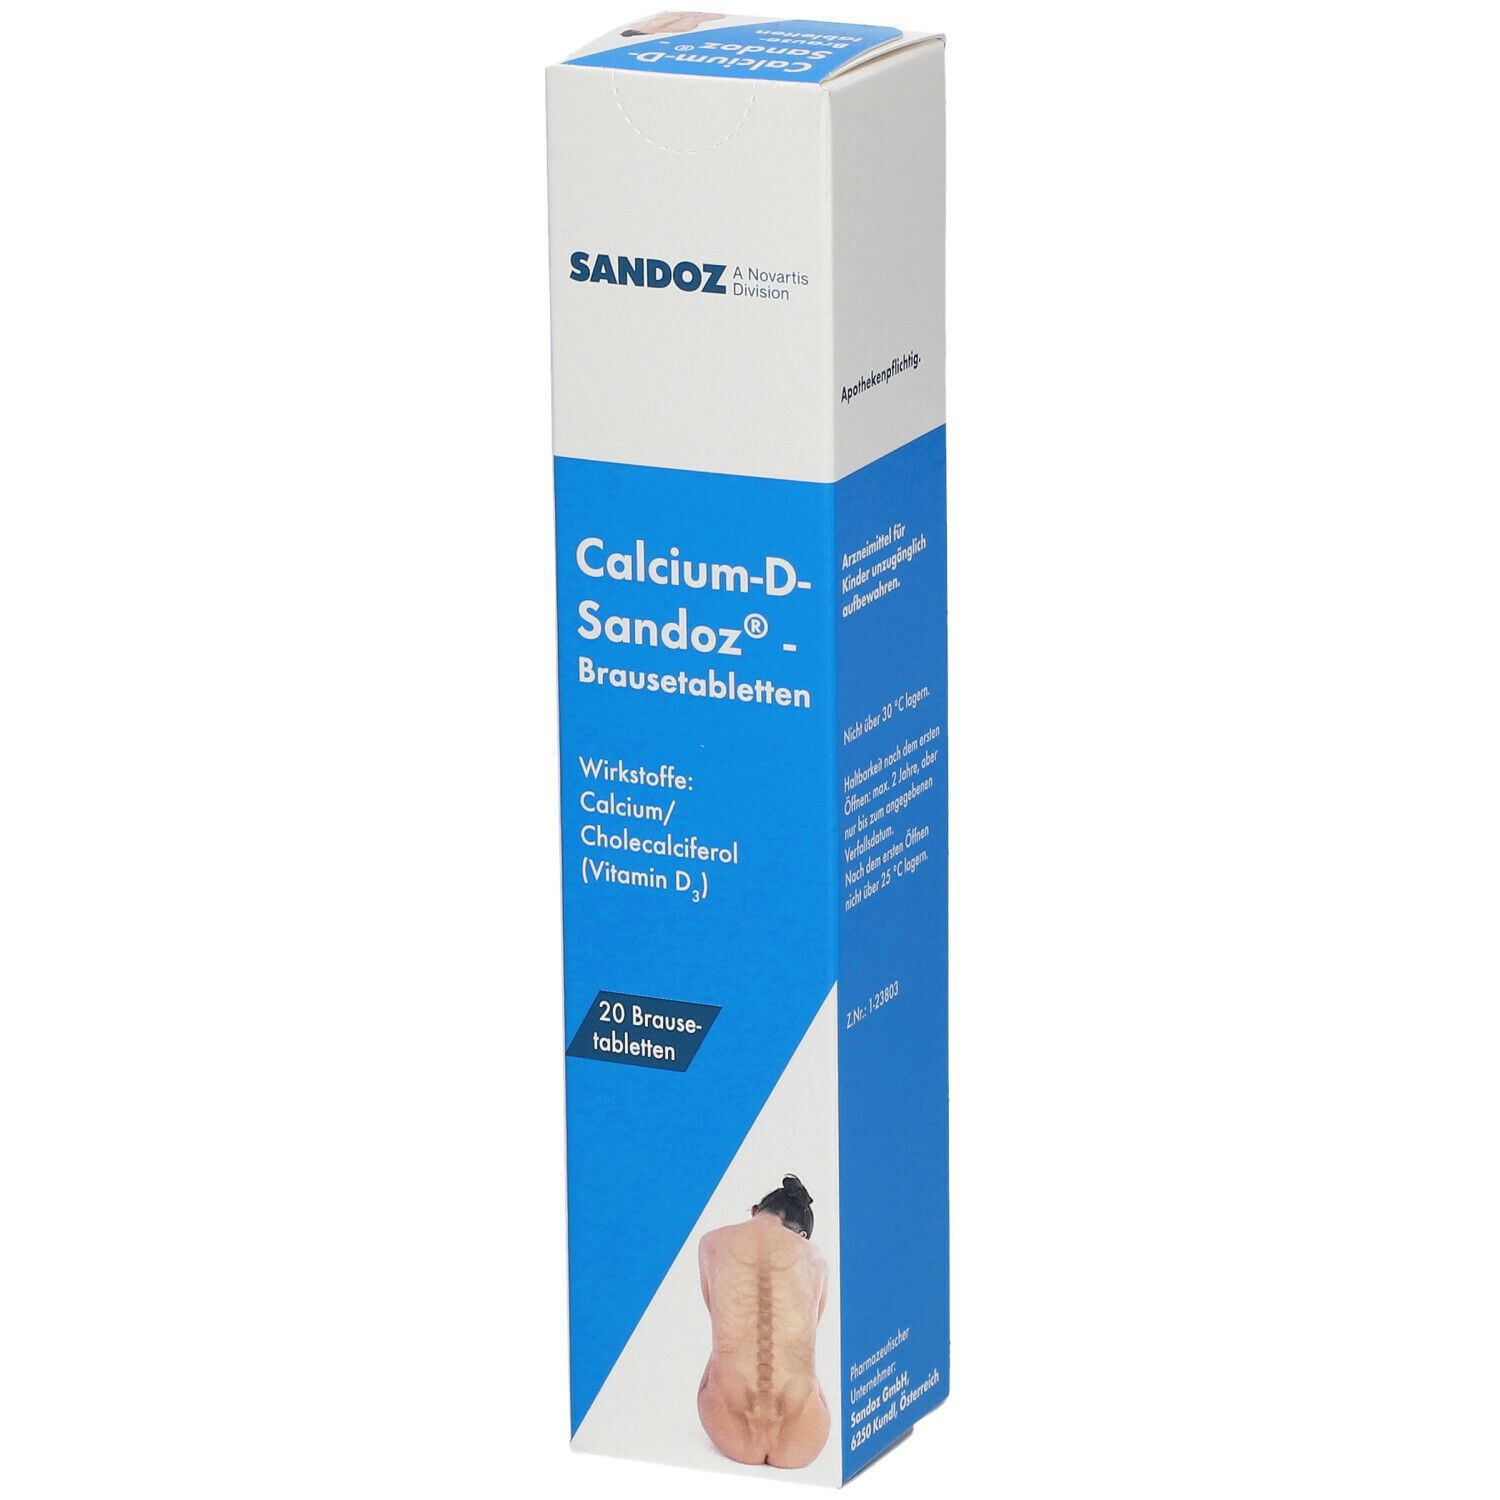 Calcium-D-Sandoz®